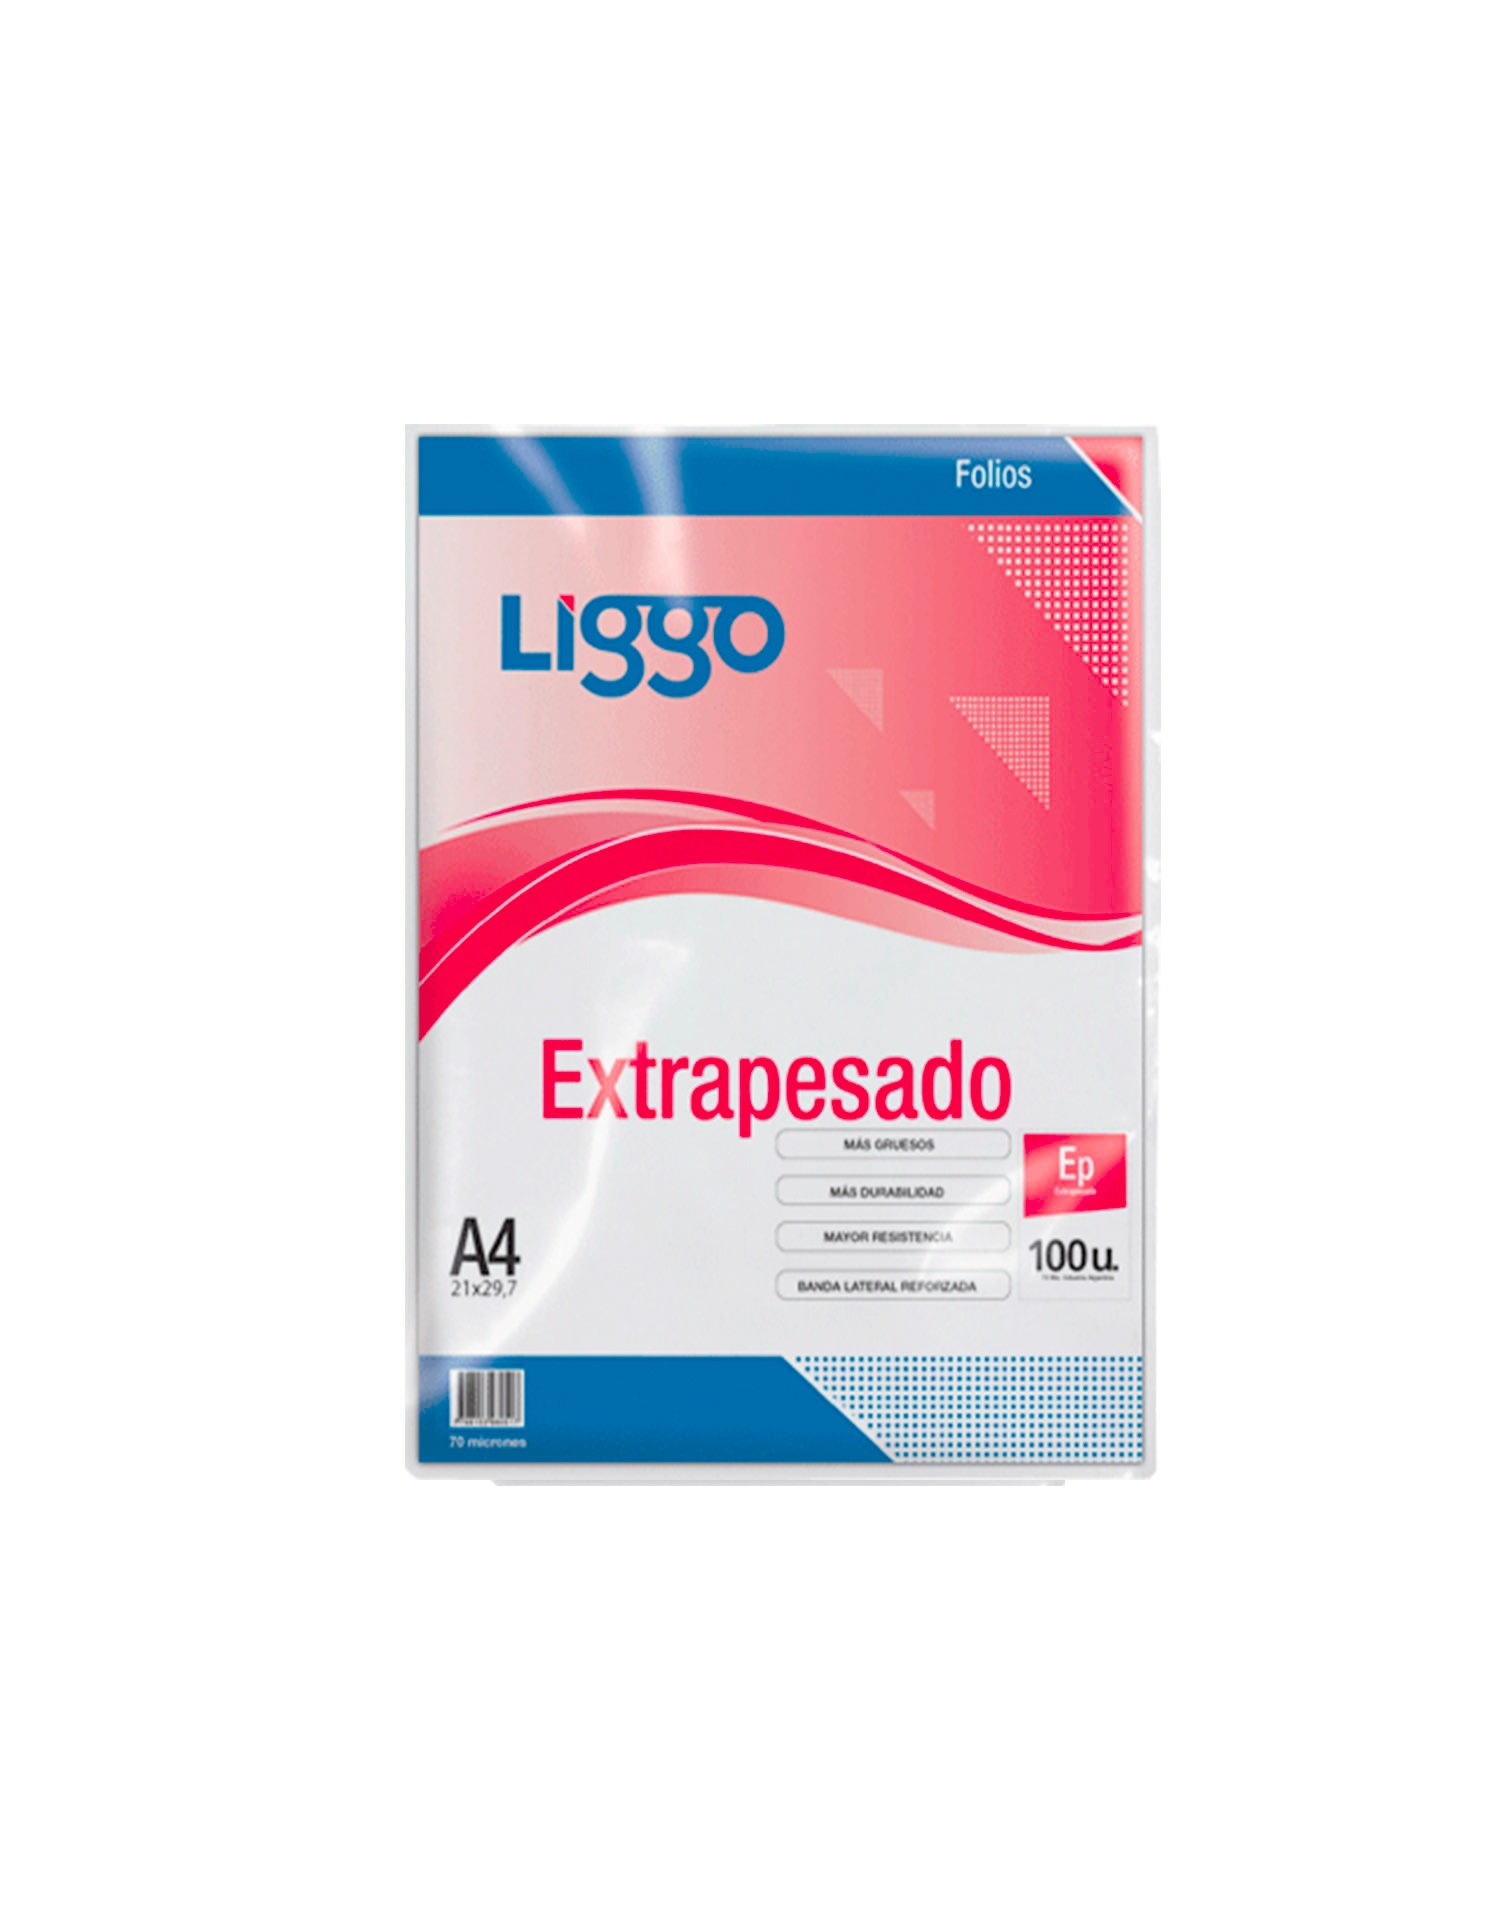 FOLIO LIGGO A4 EXTRAPESADO X 100U. (350-0100)